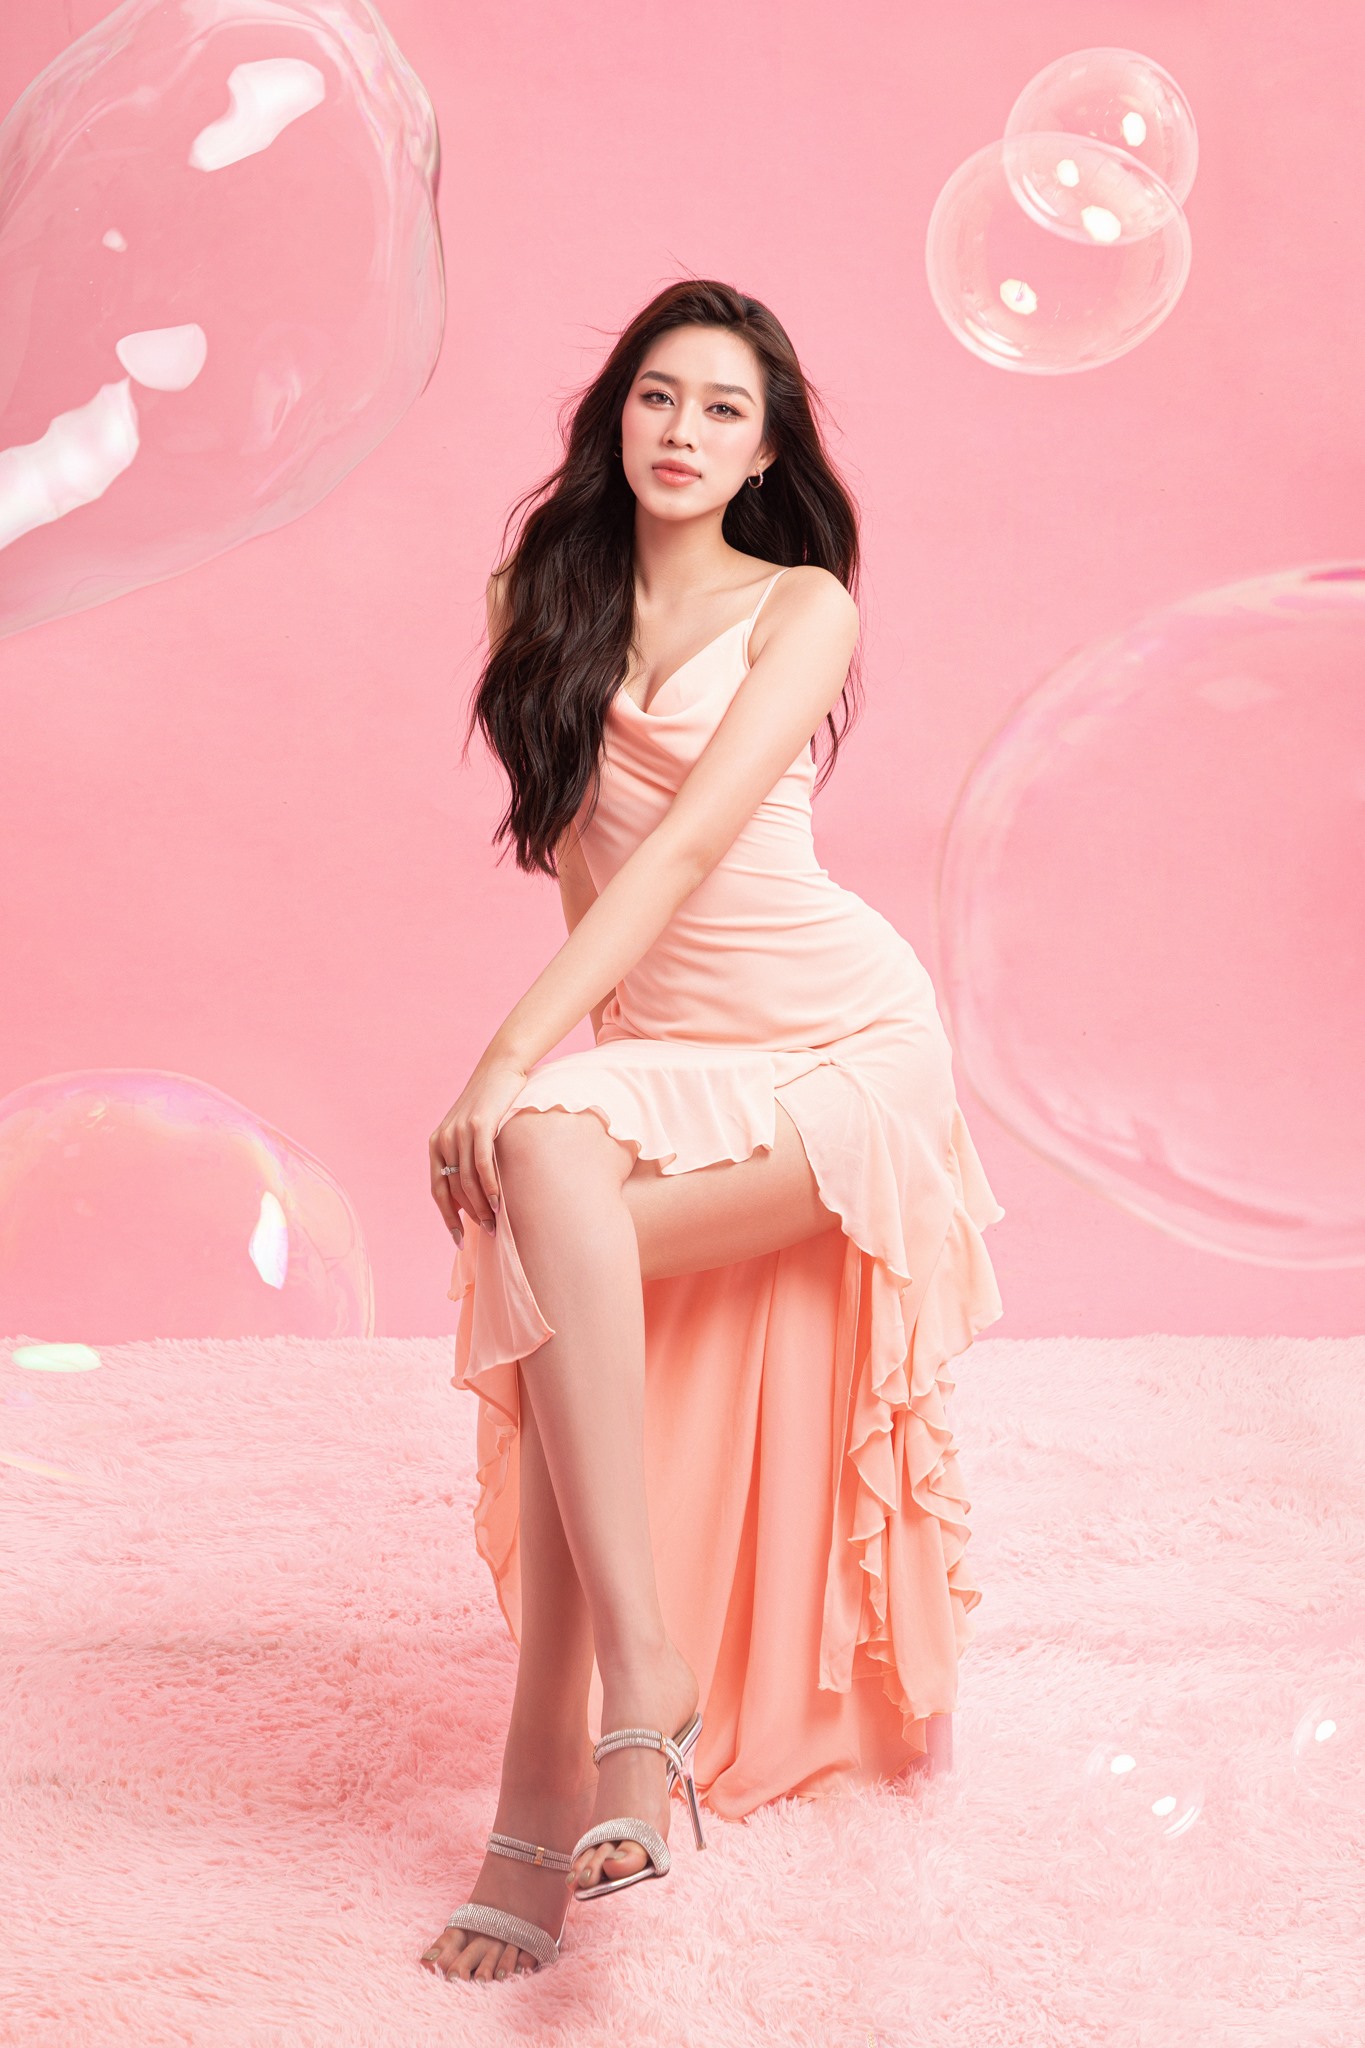 Mừng sinh nhật tuổi 22 (ngày 20.7), Đỗ Thị Hà đã tung ngay một bộ ảnh mới ngọt ngào của mình trong concept tông hồng - trắng. Nhan sắc và thần thái của nàng hậu ngày một hoàn thiện.